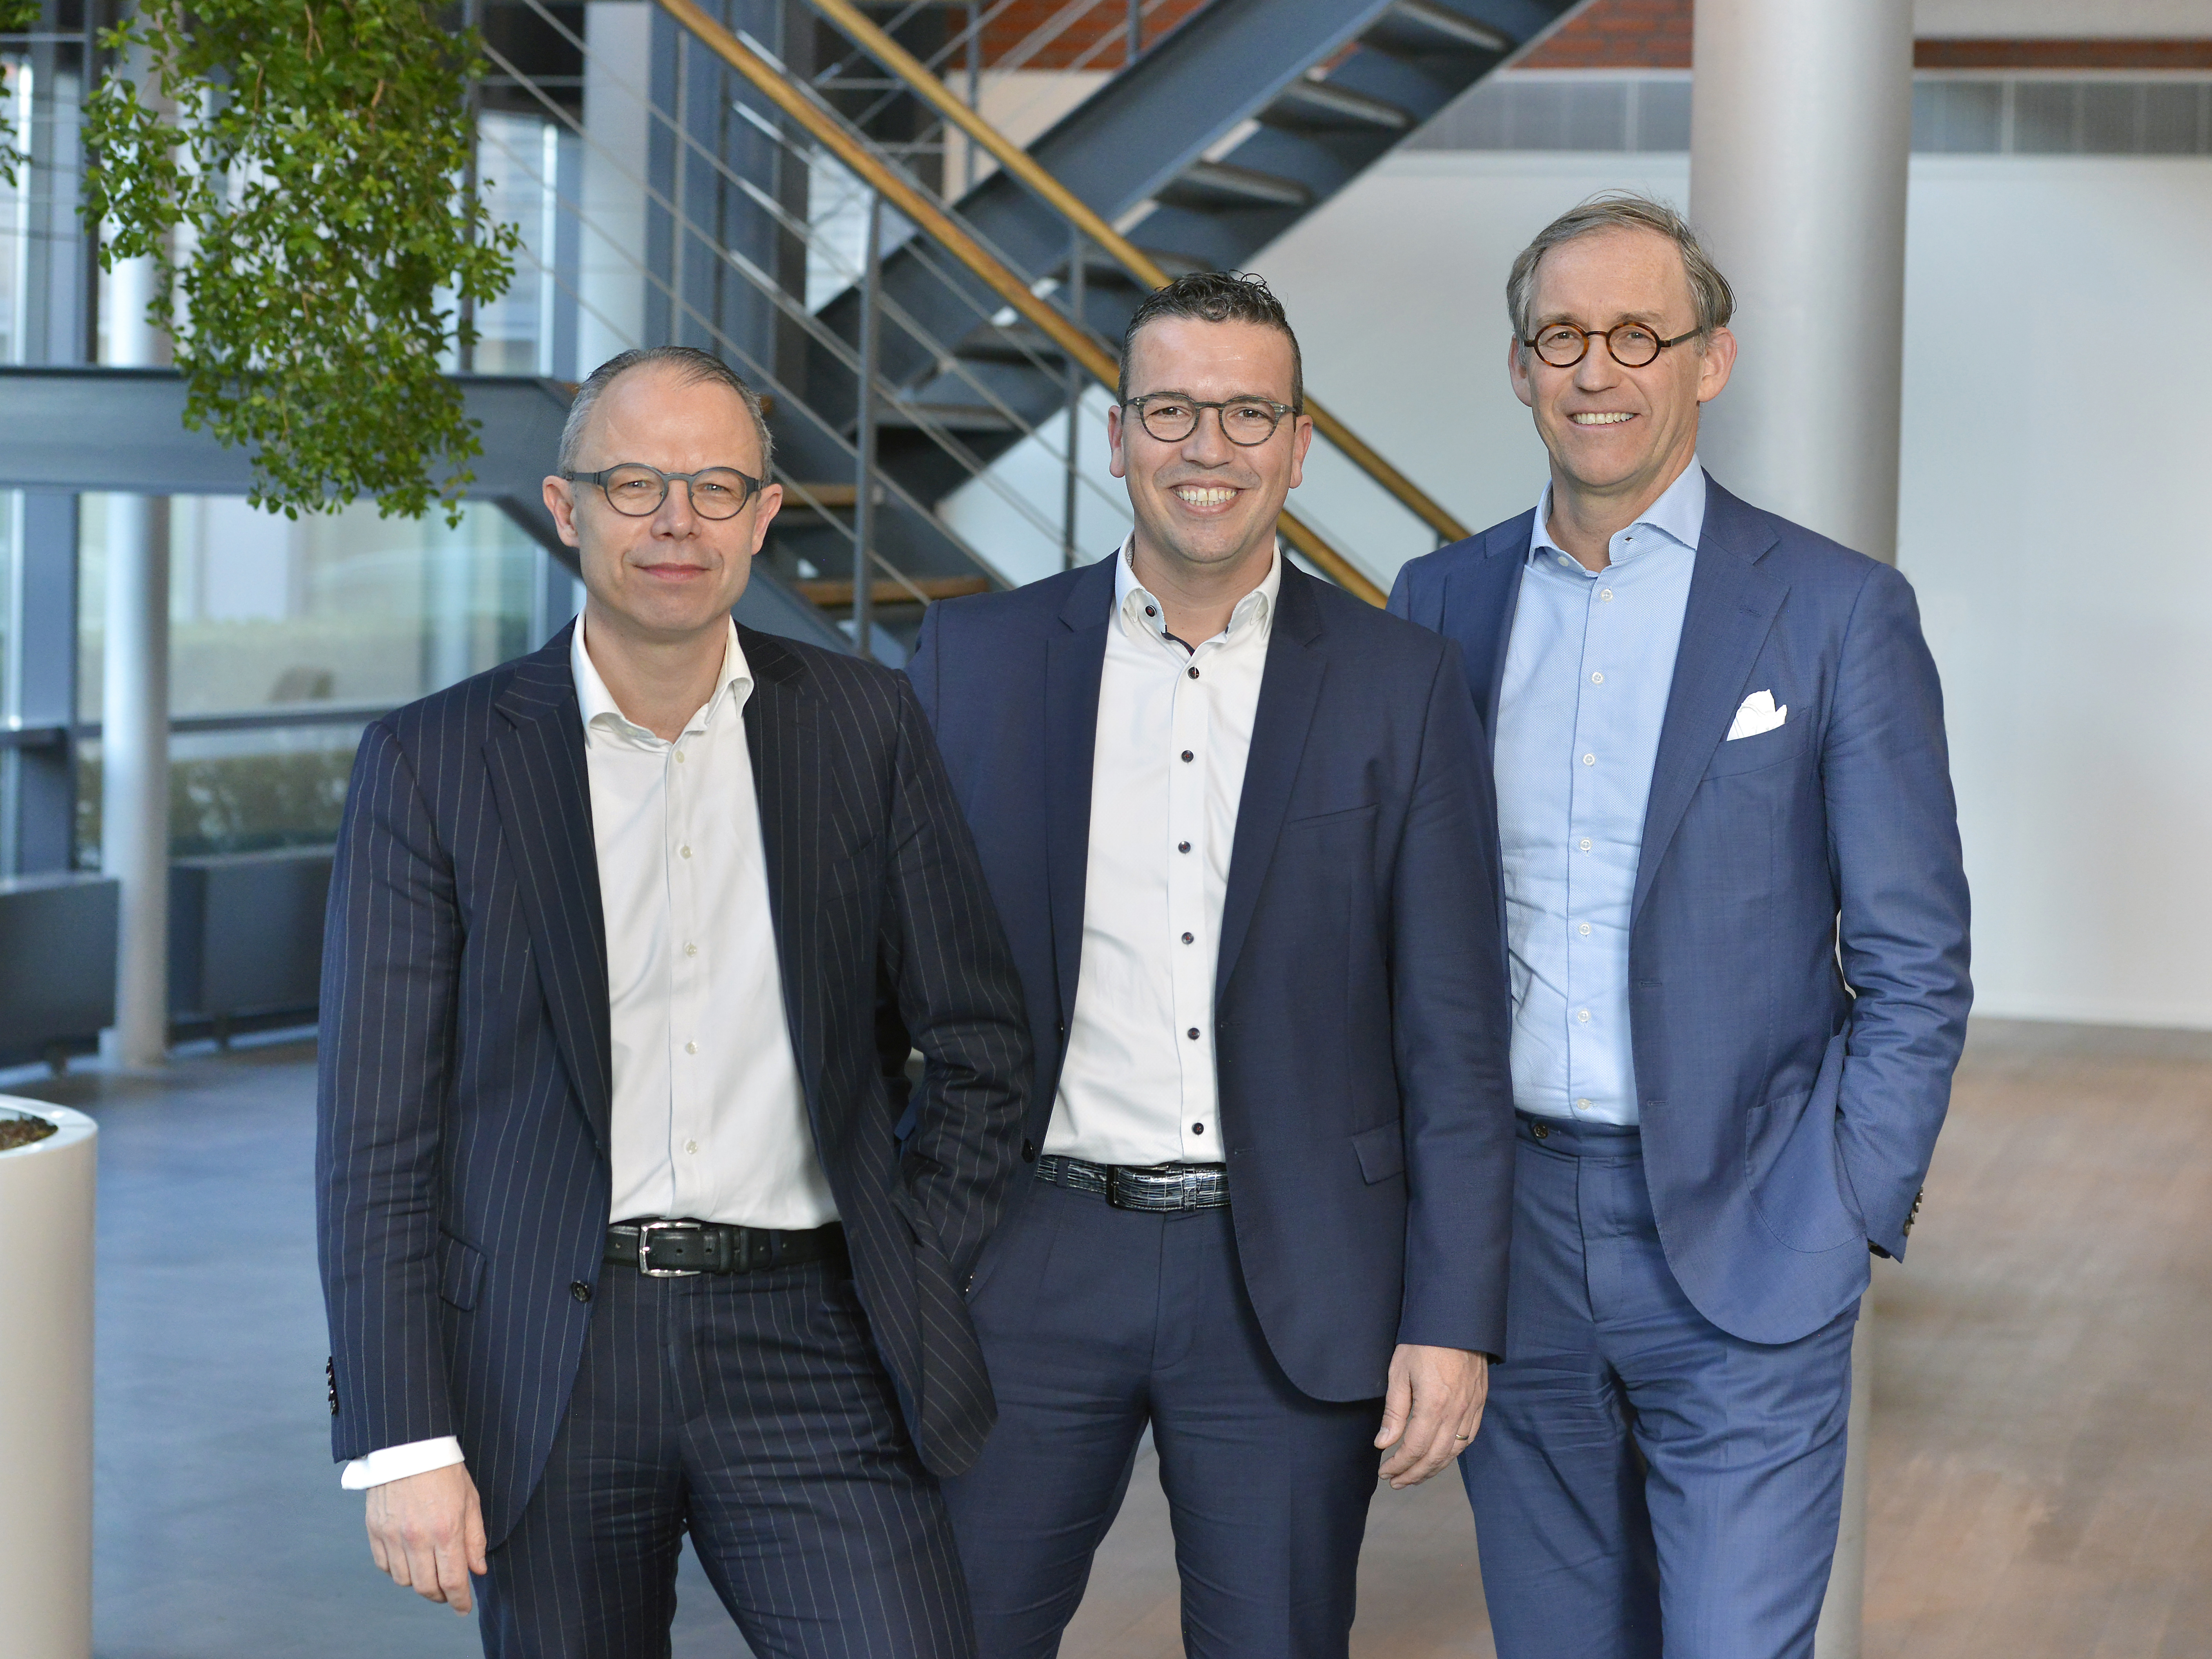 Gerard Zwartkruis en Paul van Rijn benoemd in directie Rabobank Regio Eindhoven